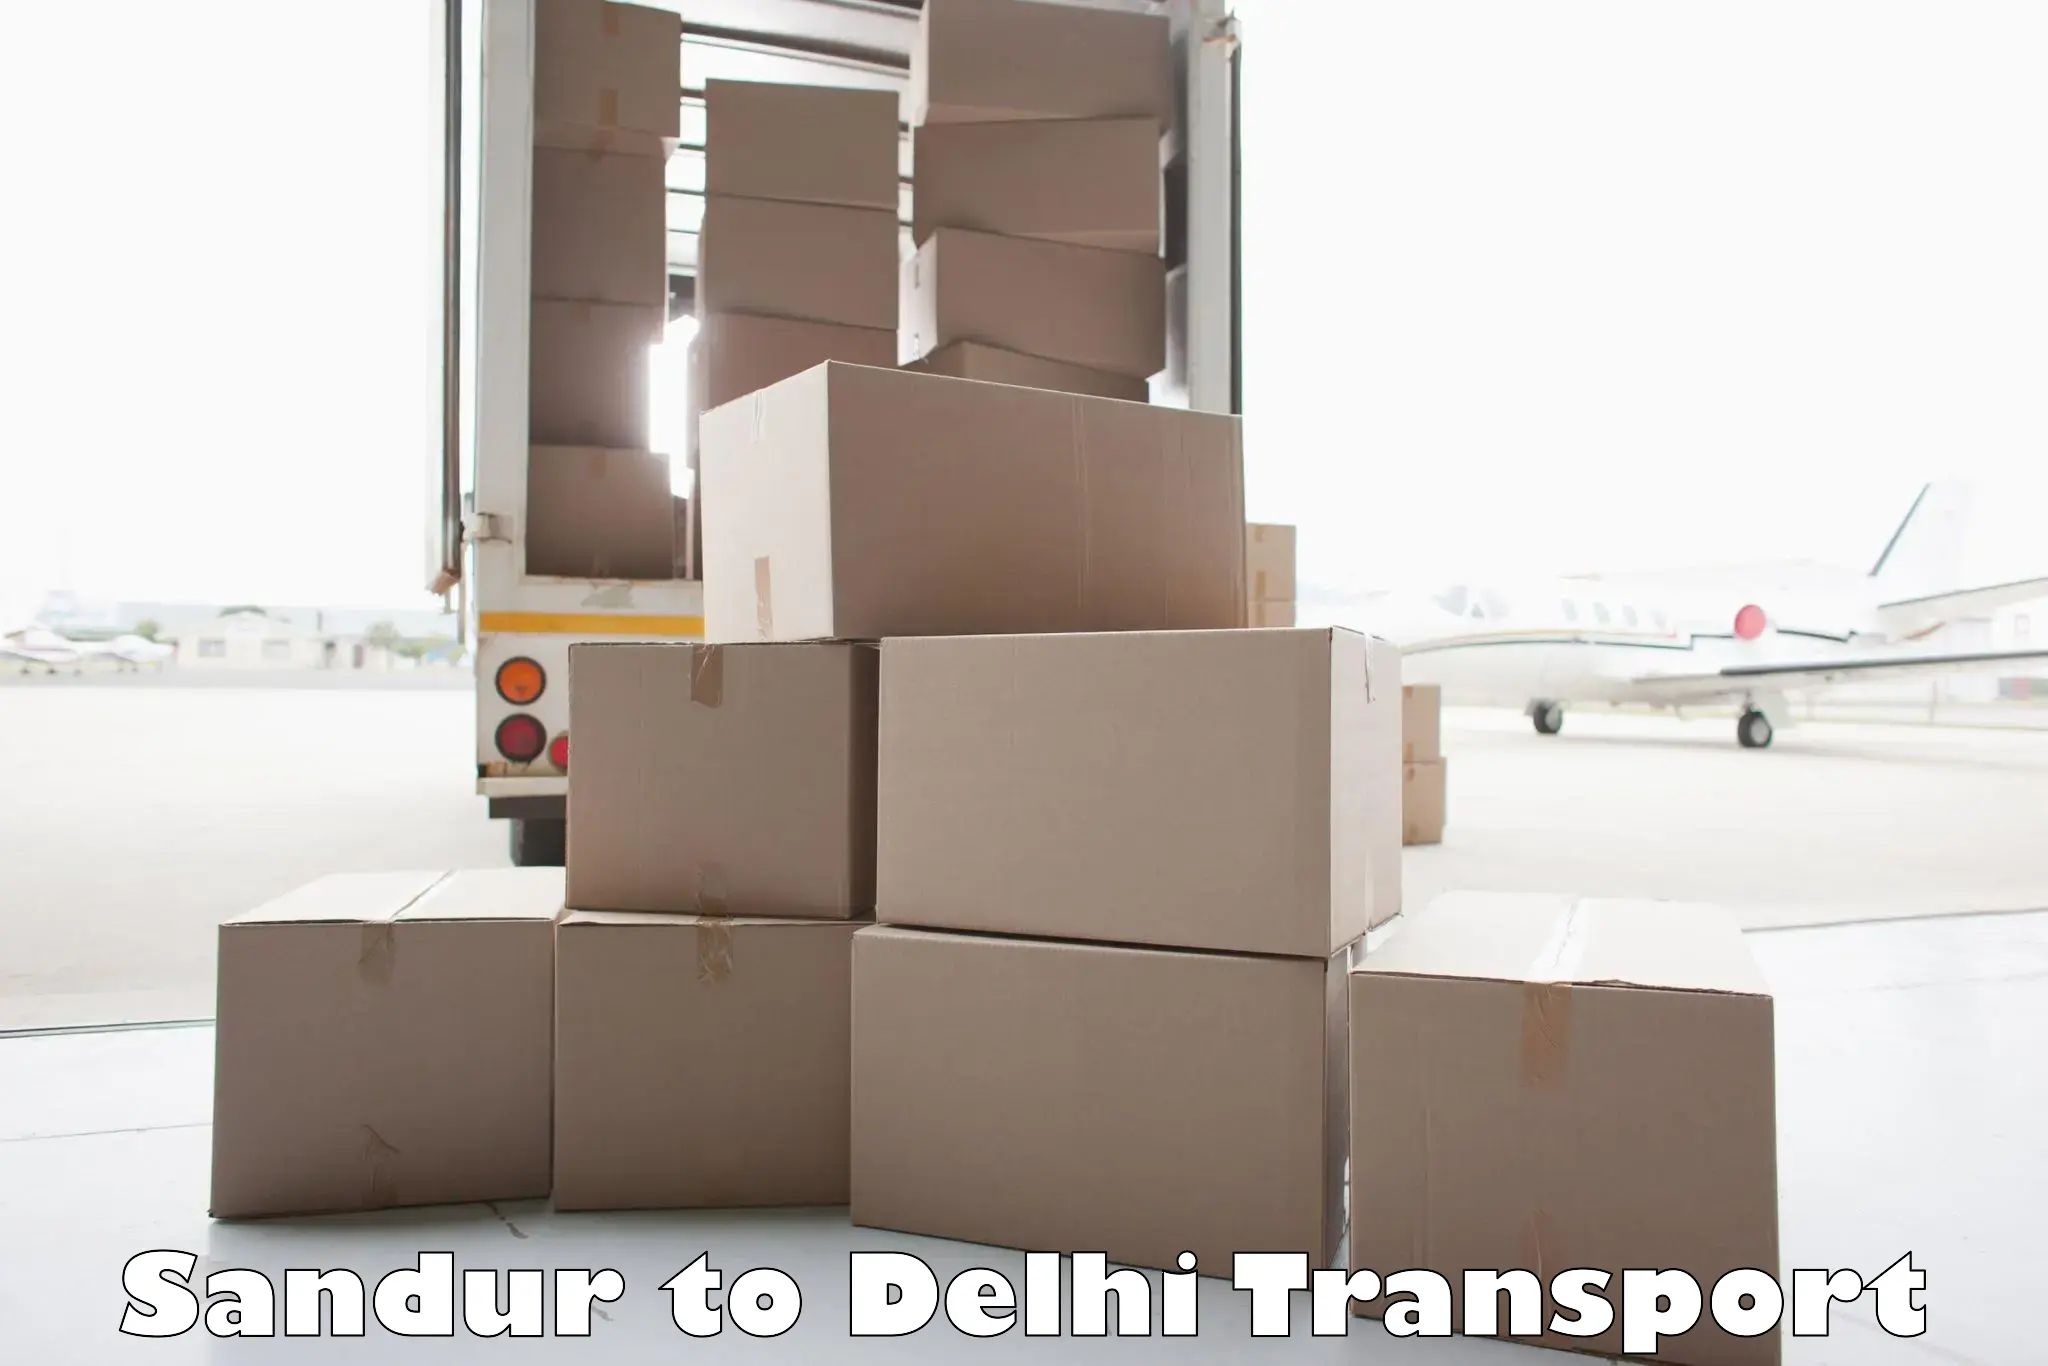 Interstate transport services Sandur to Delhi